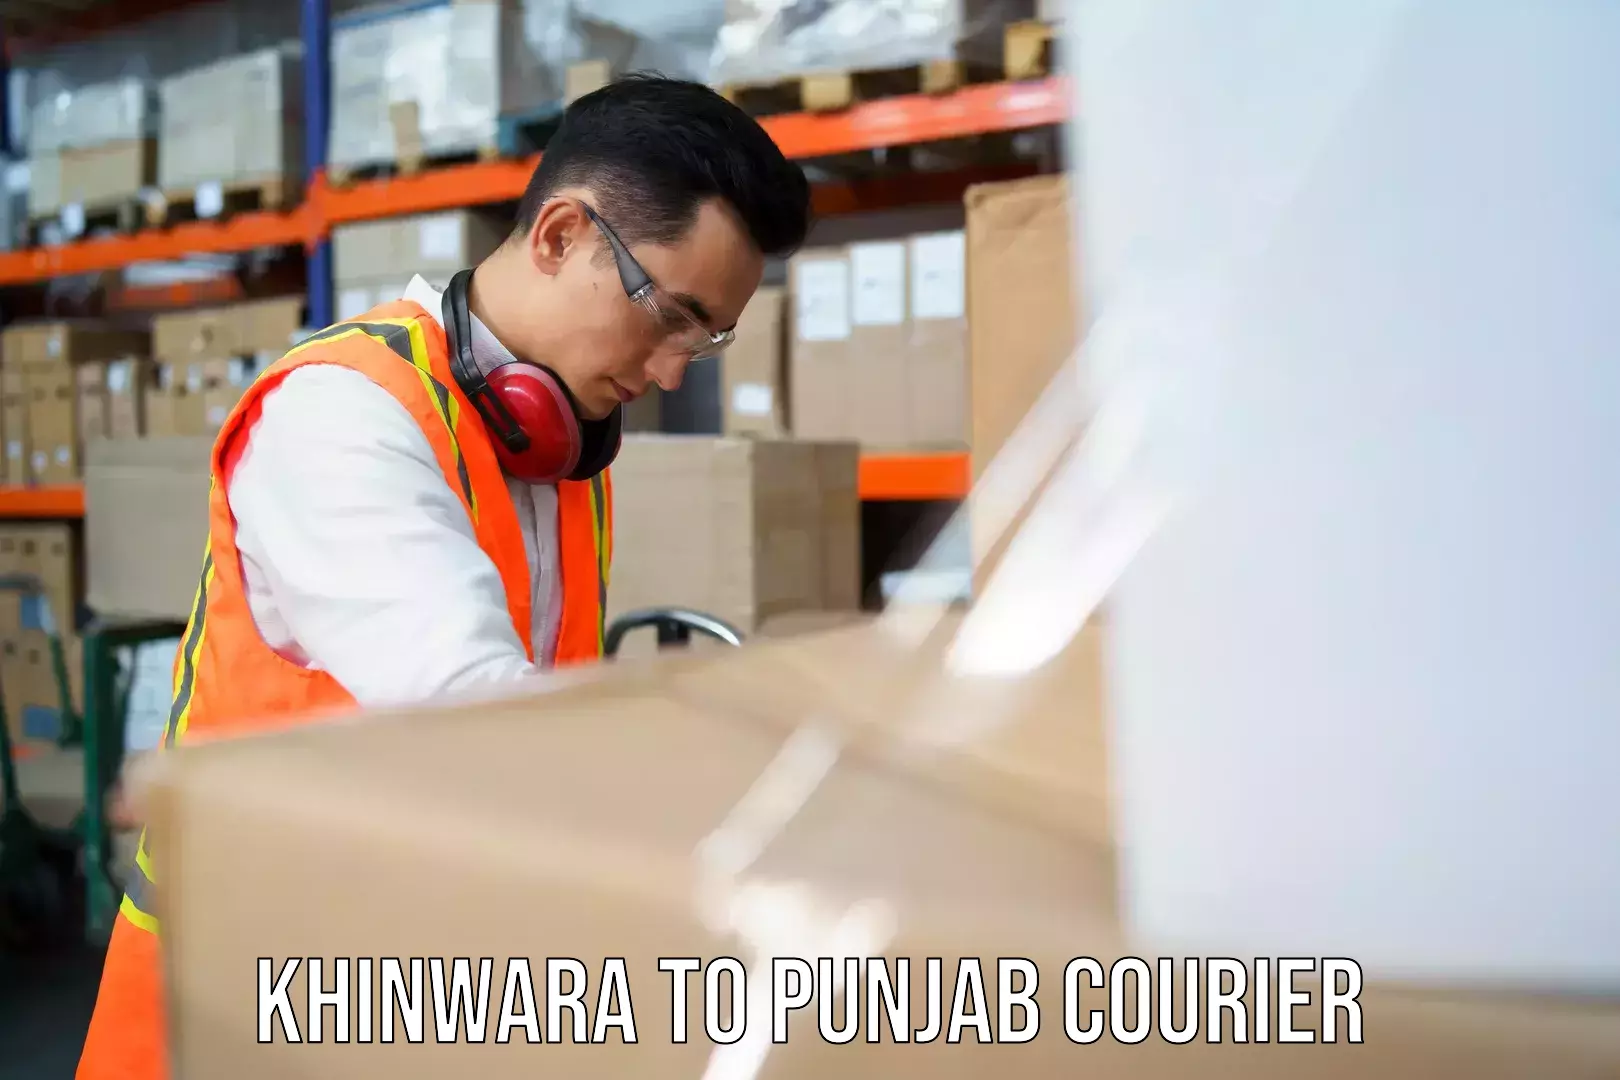 Premium courier services Khinwara to Mansa